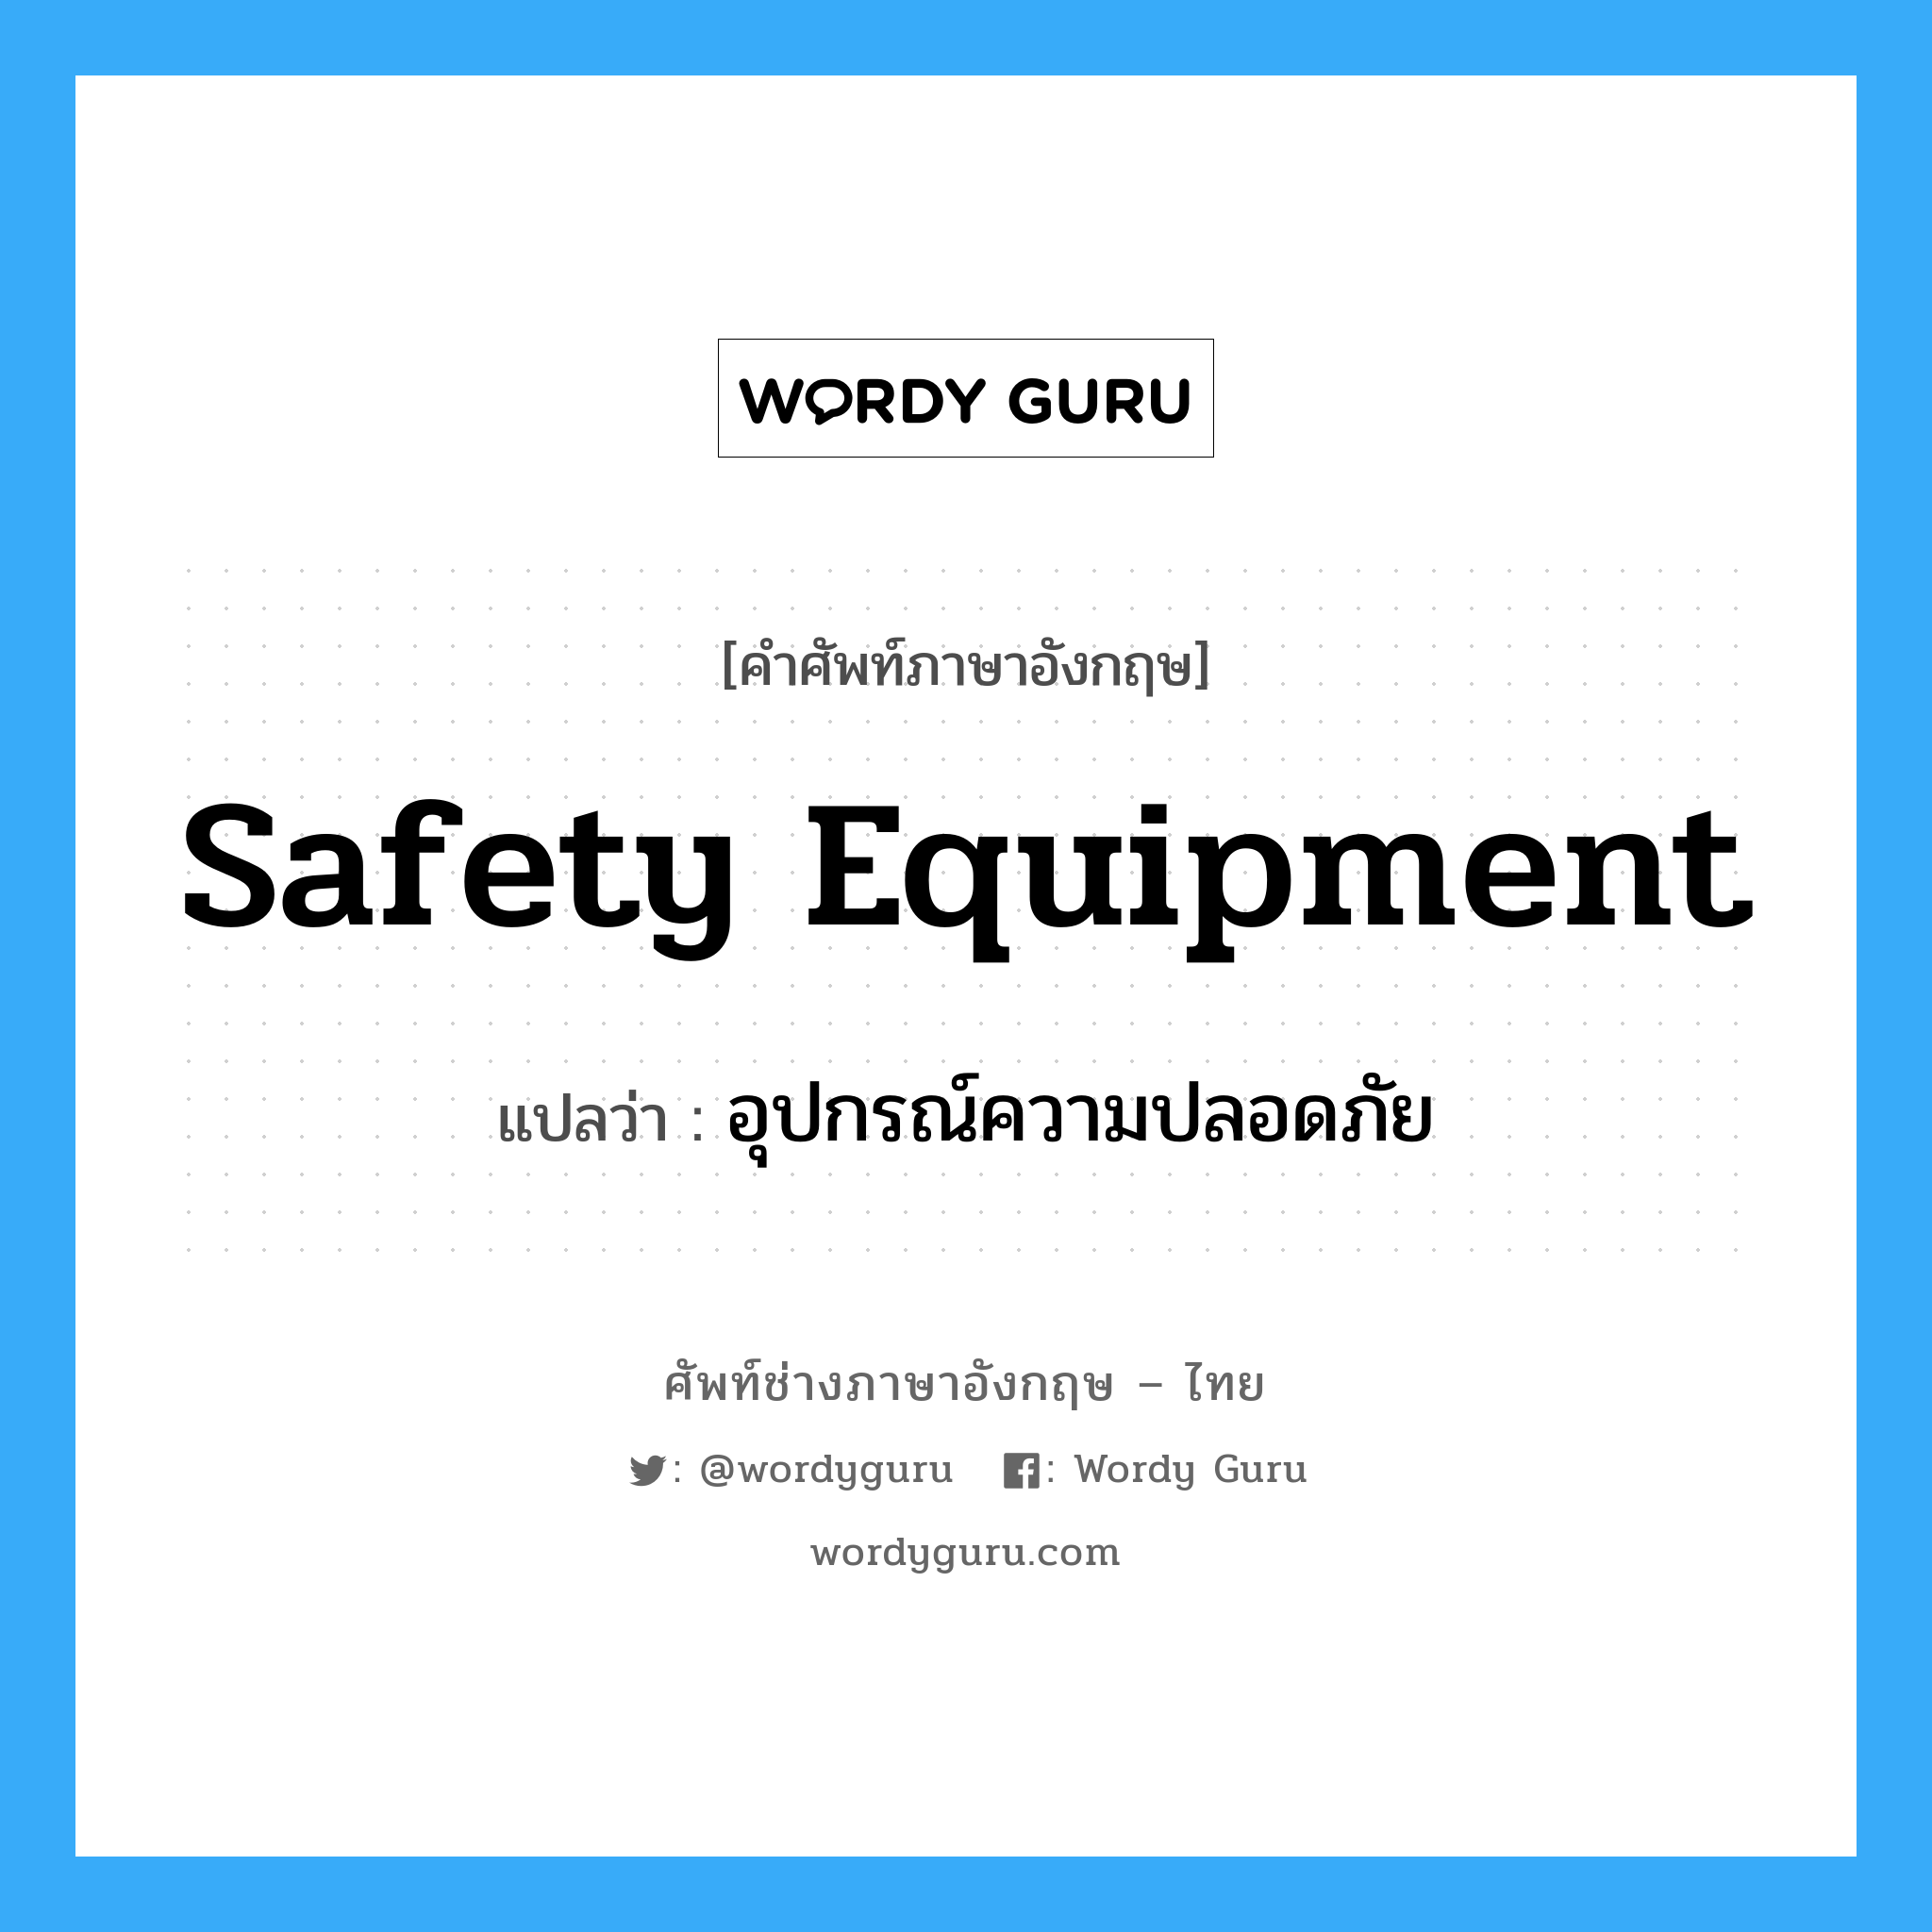 อุปกรณ์ความปลอดภัย ภาษาอังกฤษ?, คำศัพท์ช่างภาษาอังกฤษ - ไทย อุปกรณ์ความปลอดภัย คำศัพท์ภาษาอังกฤษ อุปกรณ์ความปลอดภัย แปลว่า safety equipment